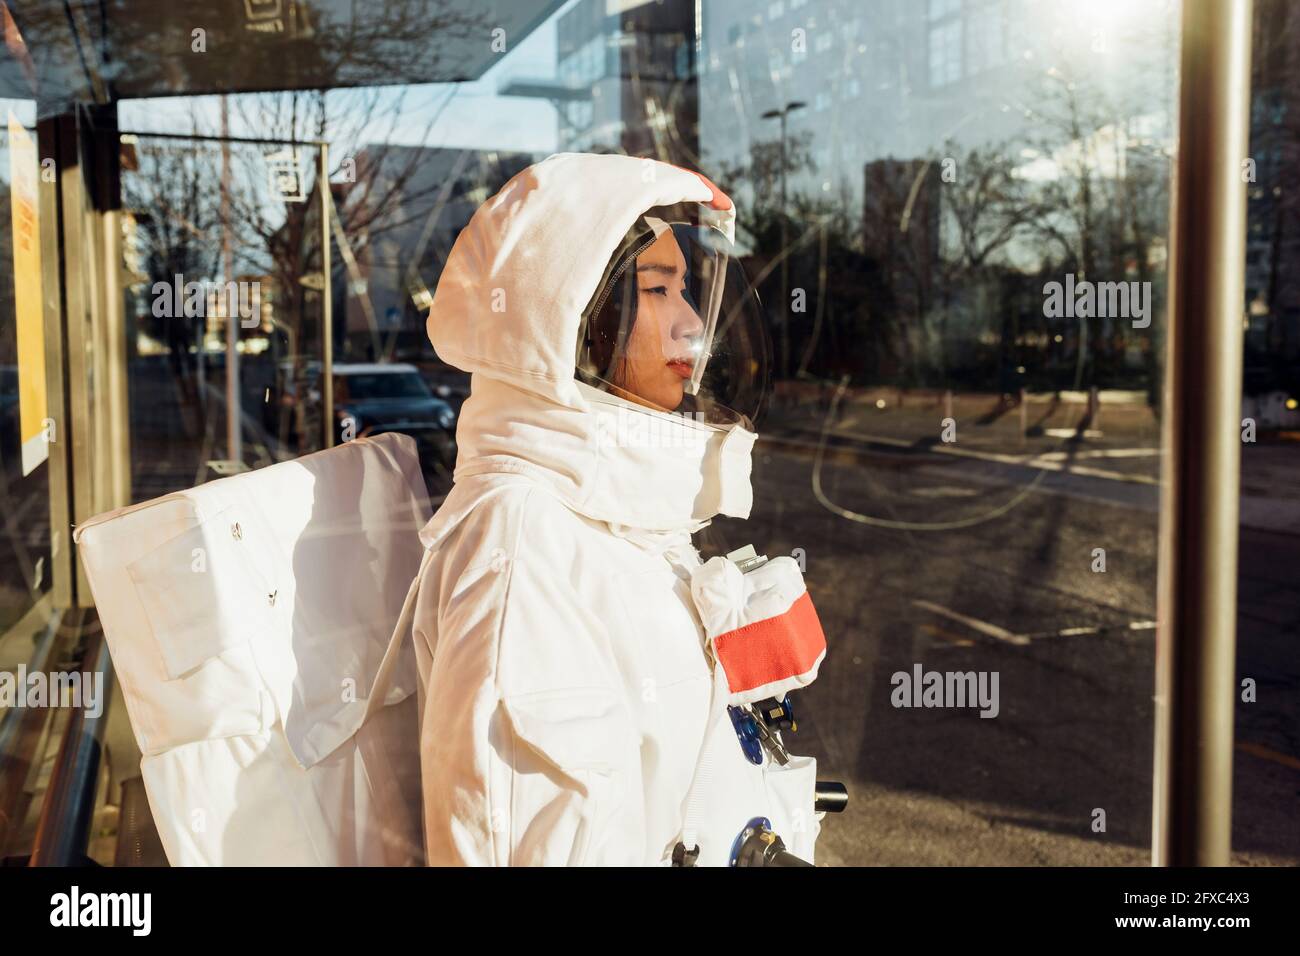 Weibliche Astronautin im Raumanzug, die an einem sonnigen Tag durch das Glas an der Bushaltestelle steht Stockfoto